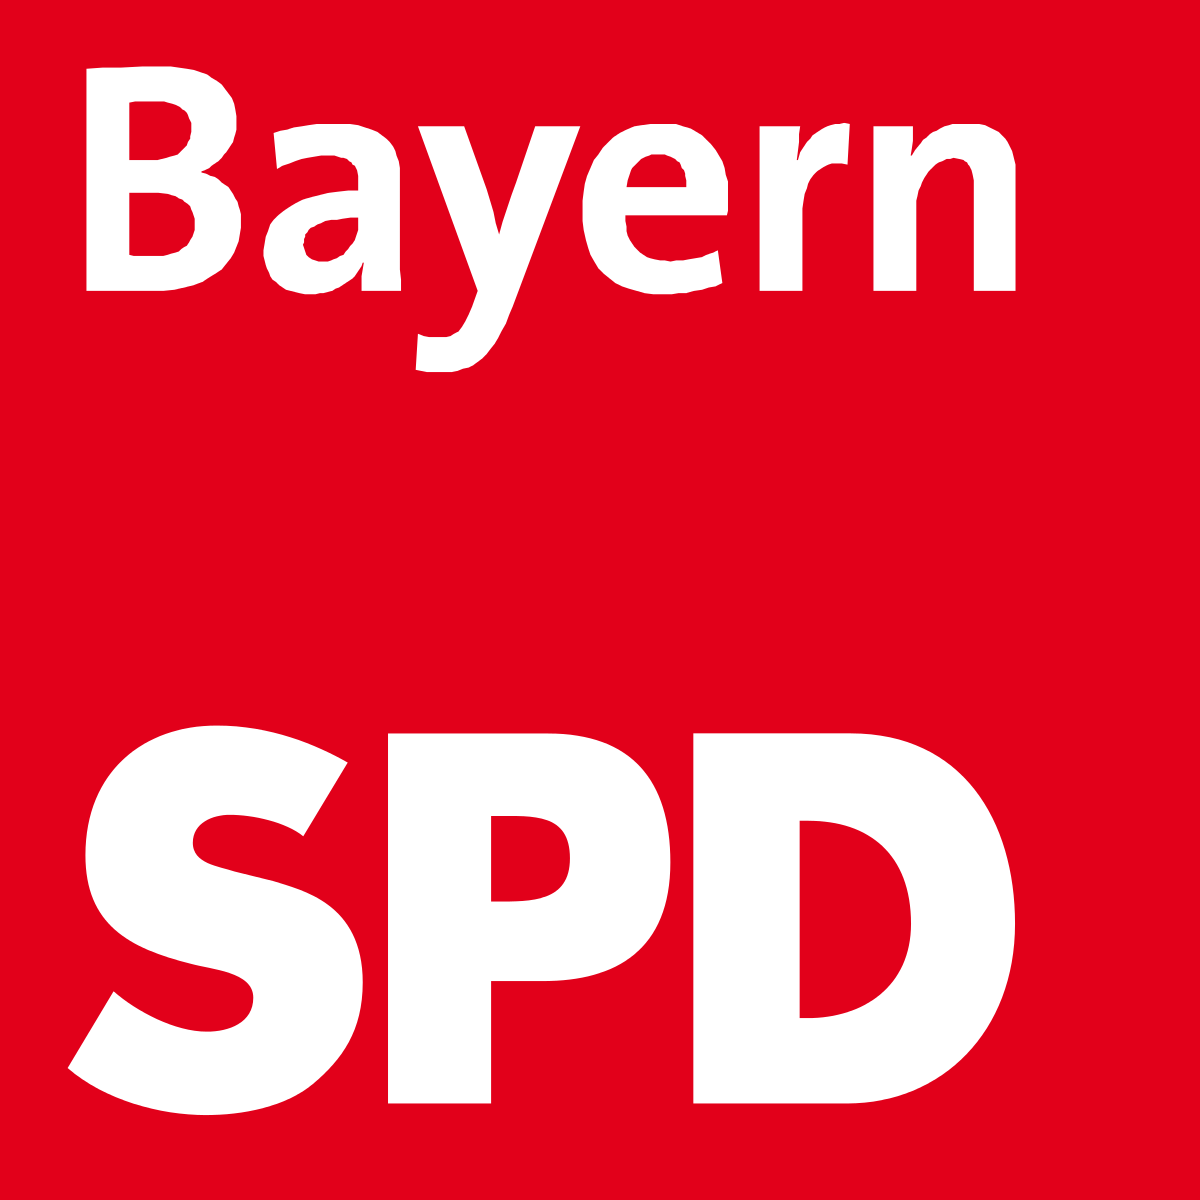 spd-bayern-logo